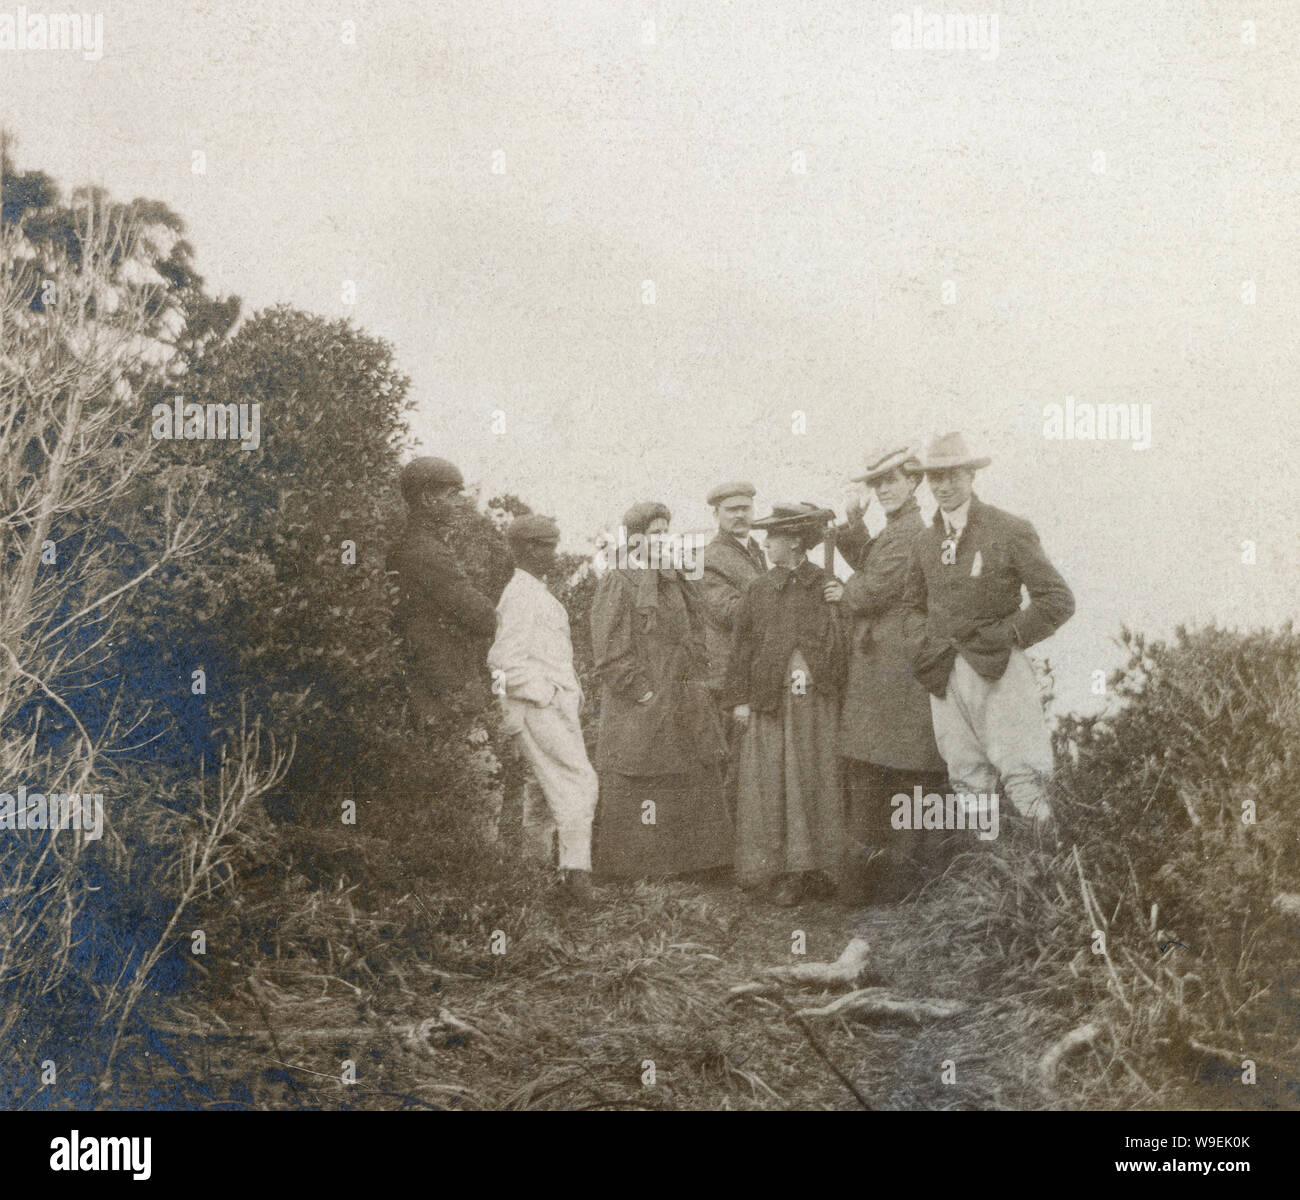 Antike c 1890 Foto, Weiß und Afrikanische amerikanische Gruppe im Freien. Standort unbekannt, USA. Quelle: original Foto. Stockfoto